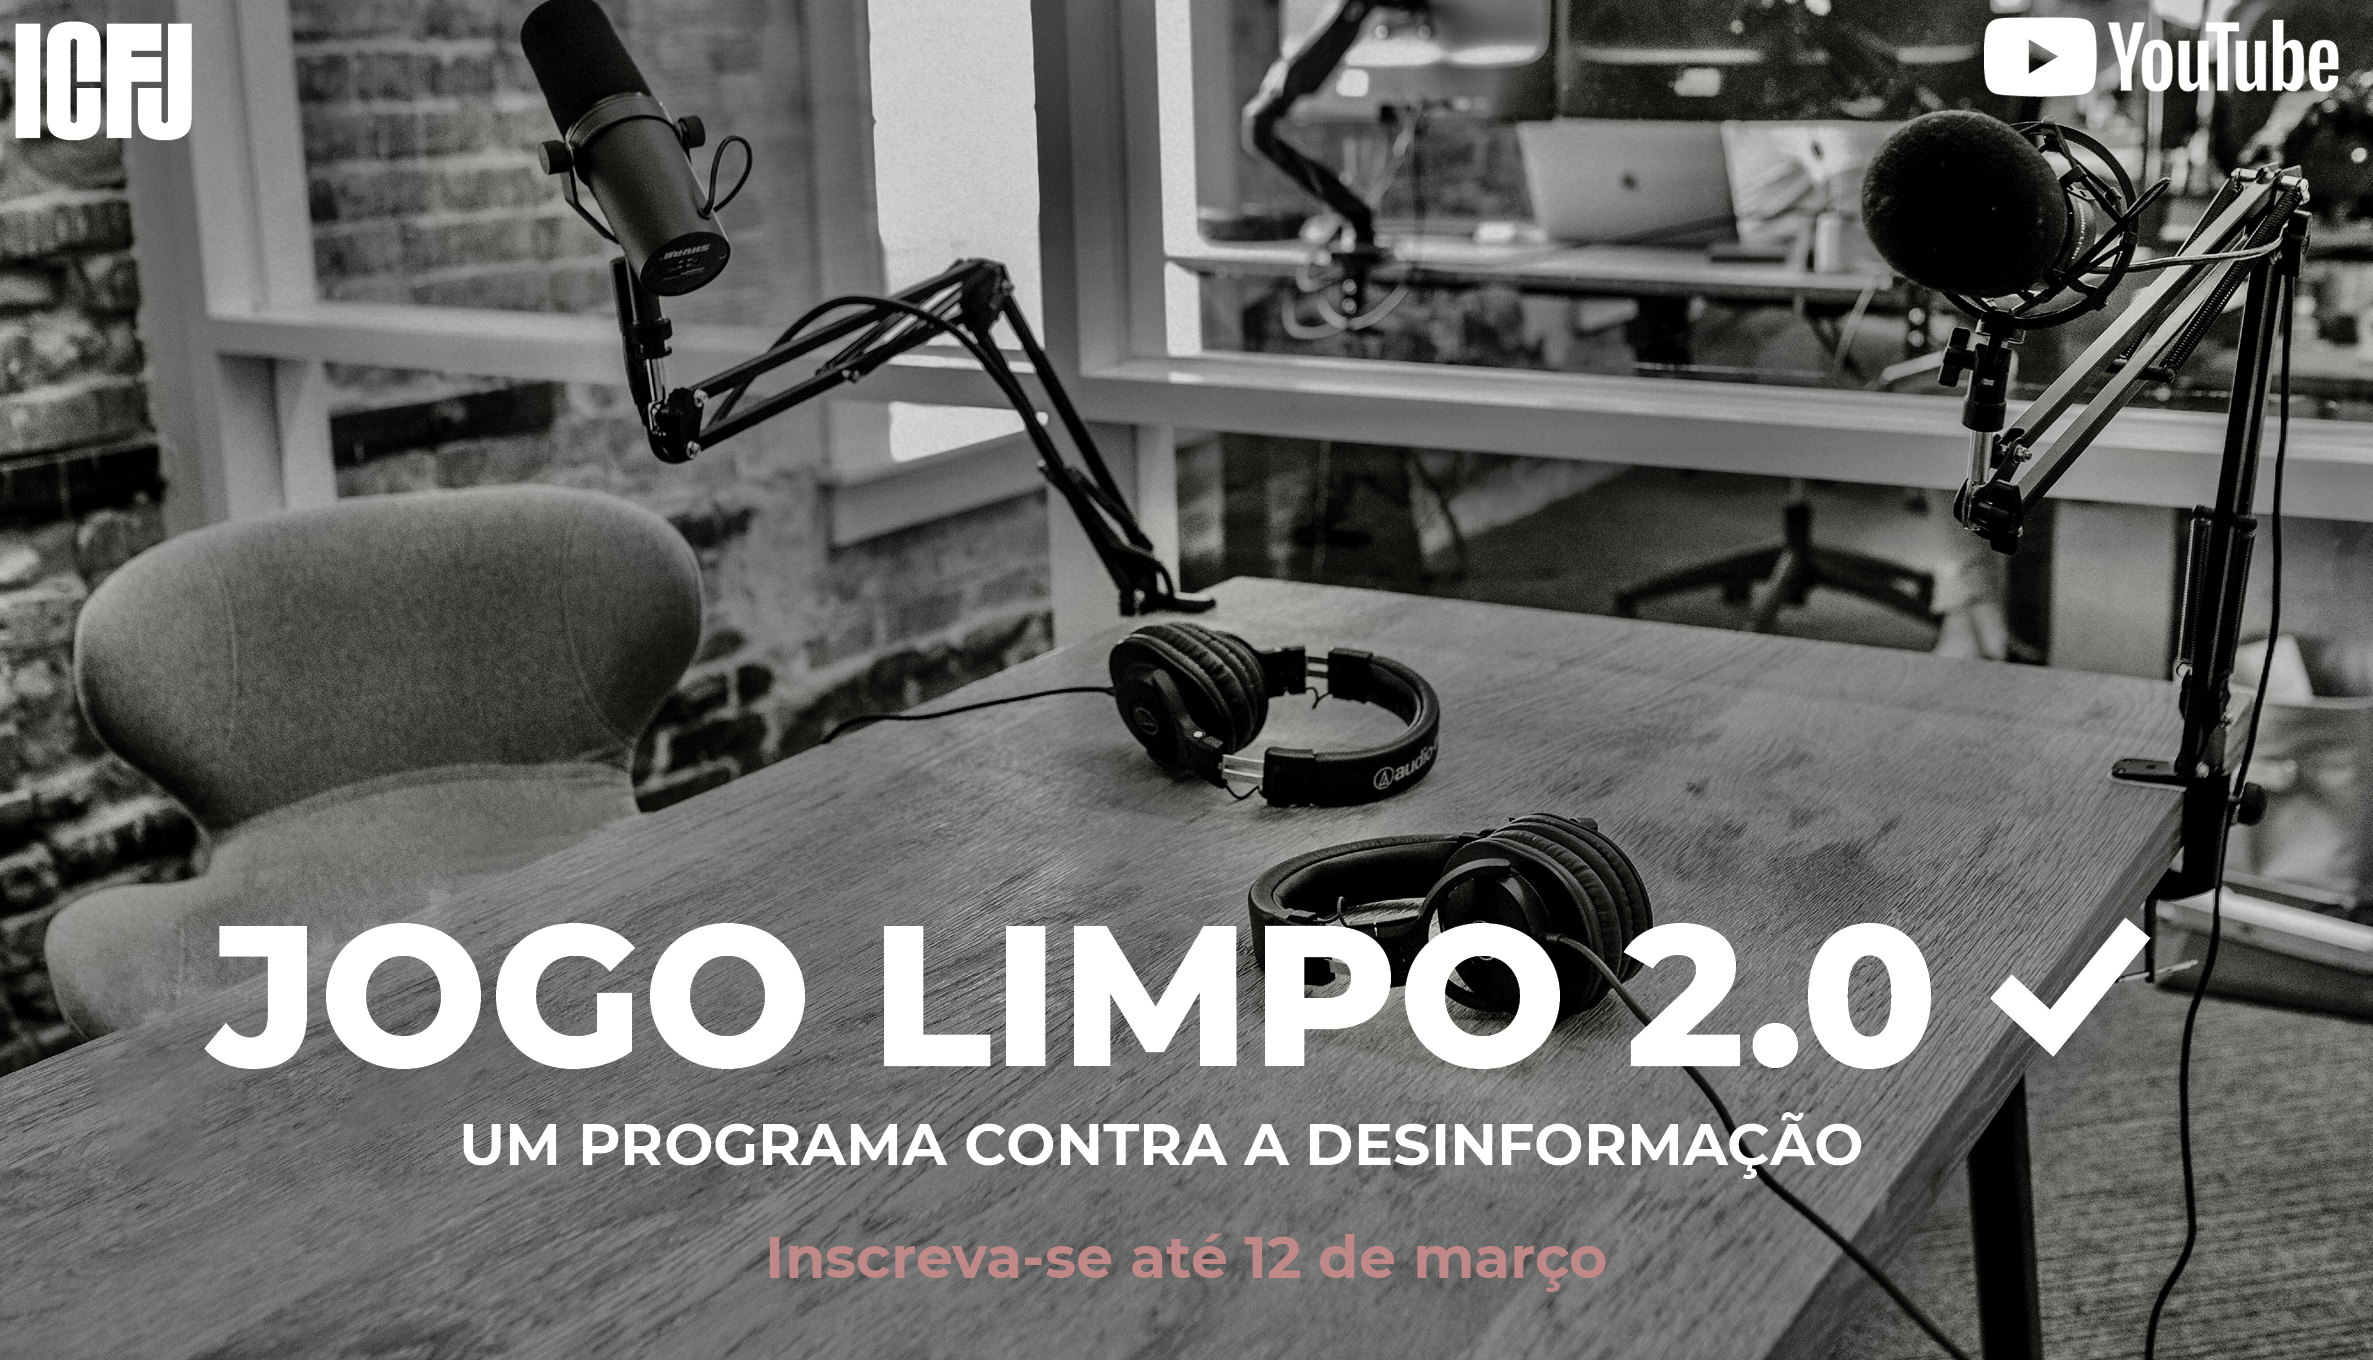 Jogo Limpo 2.0, a Program to Combat Disinformation in Brazil in 2023